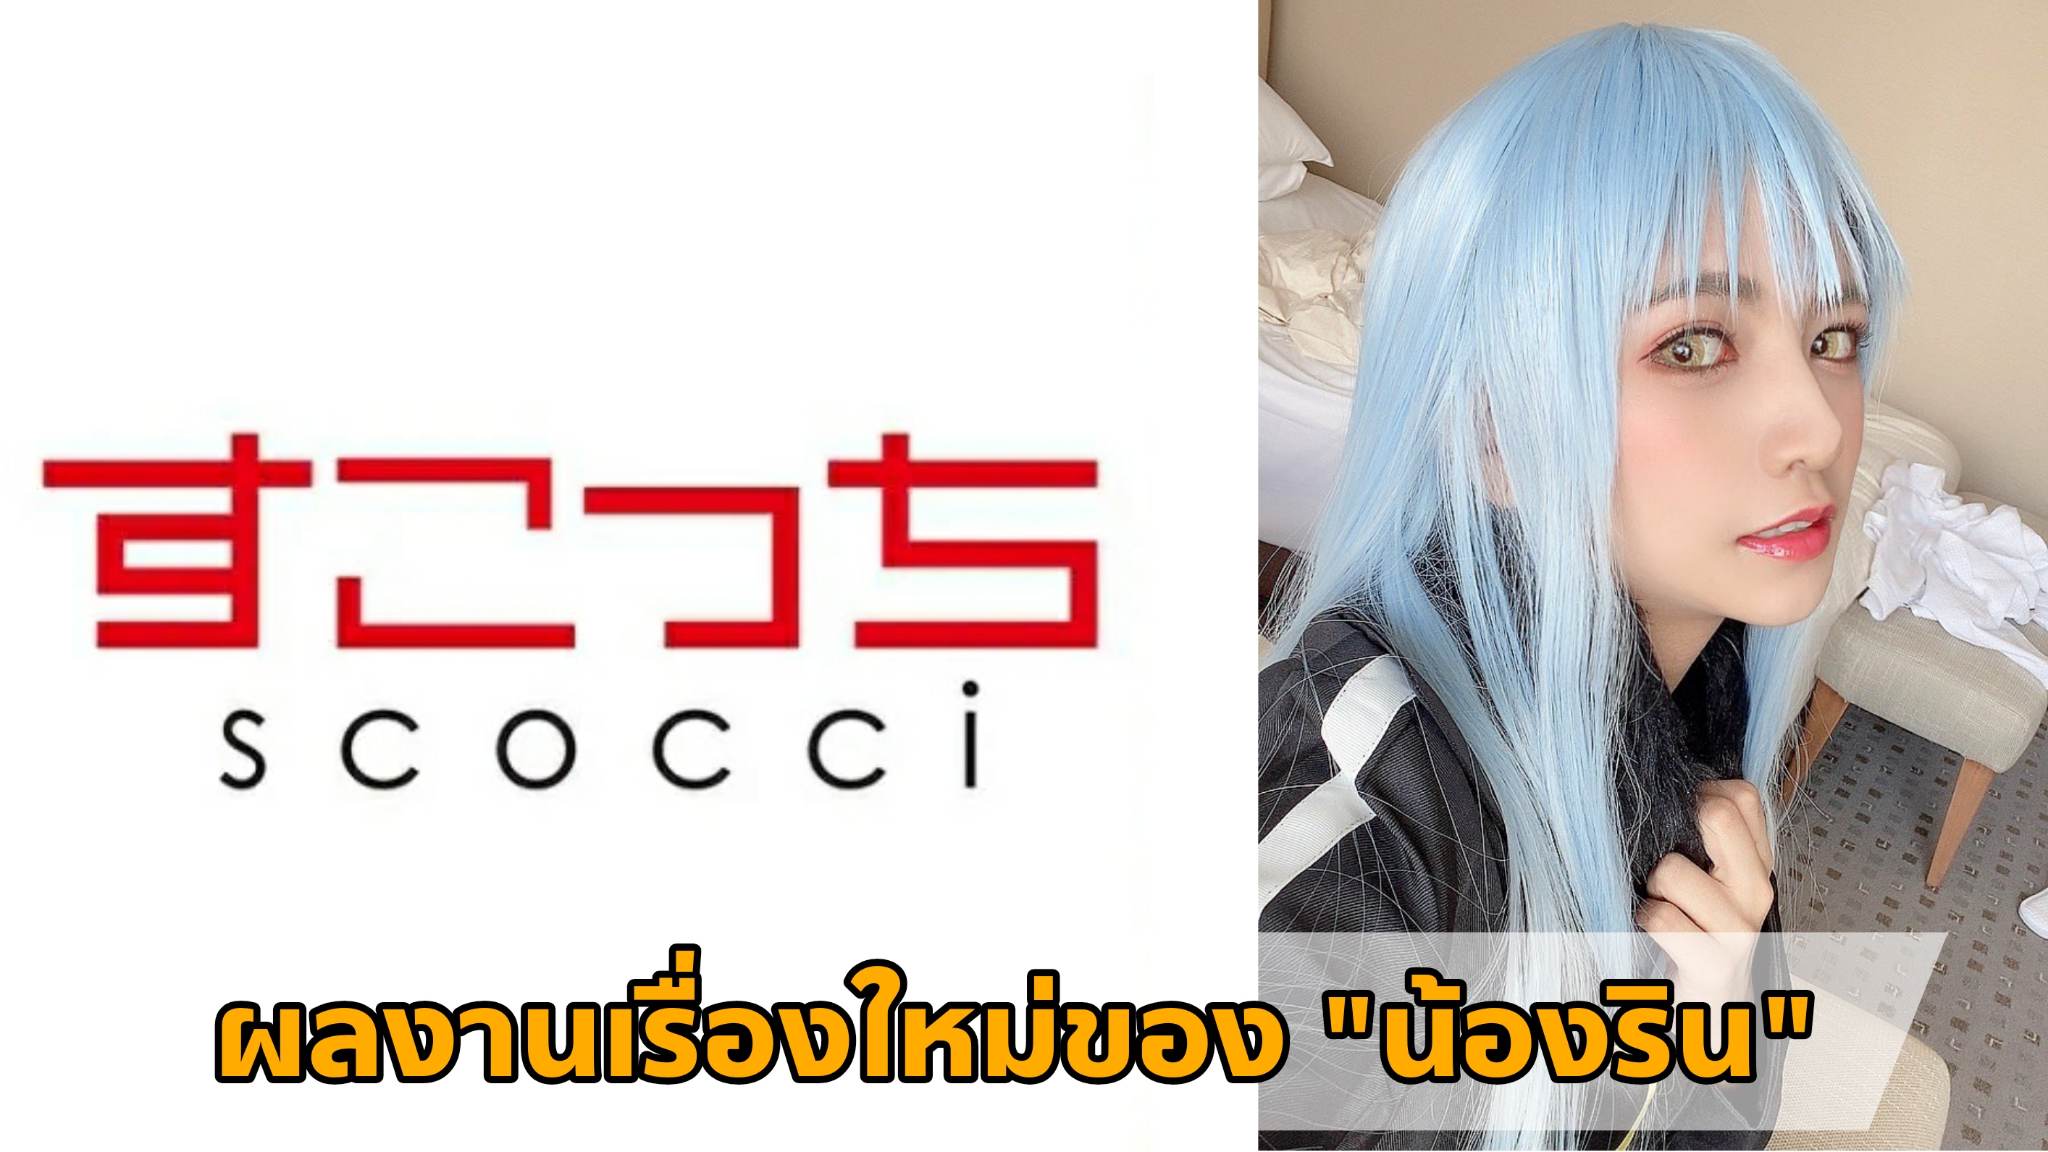 [SCOH-105] ผลงานเรื่องใหม่ของ "น้องริน" (Rin Miyazaki) Cosplay เป็น "ท่านริมุรุ" 11